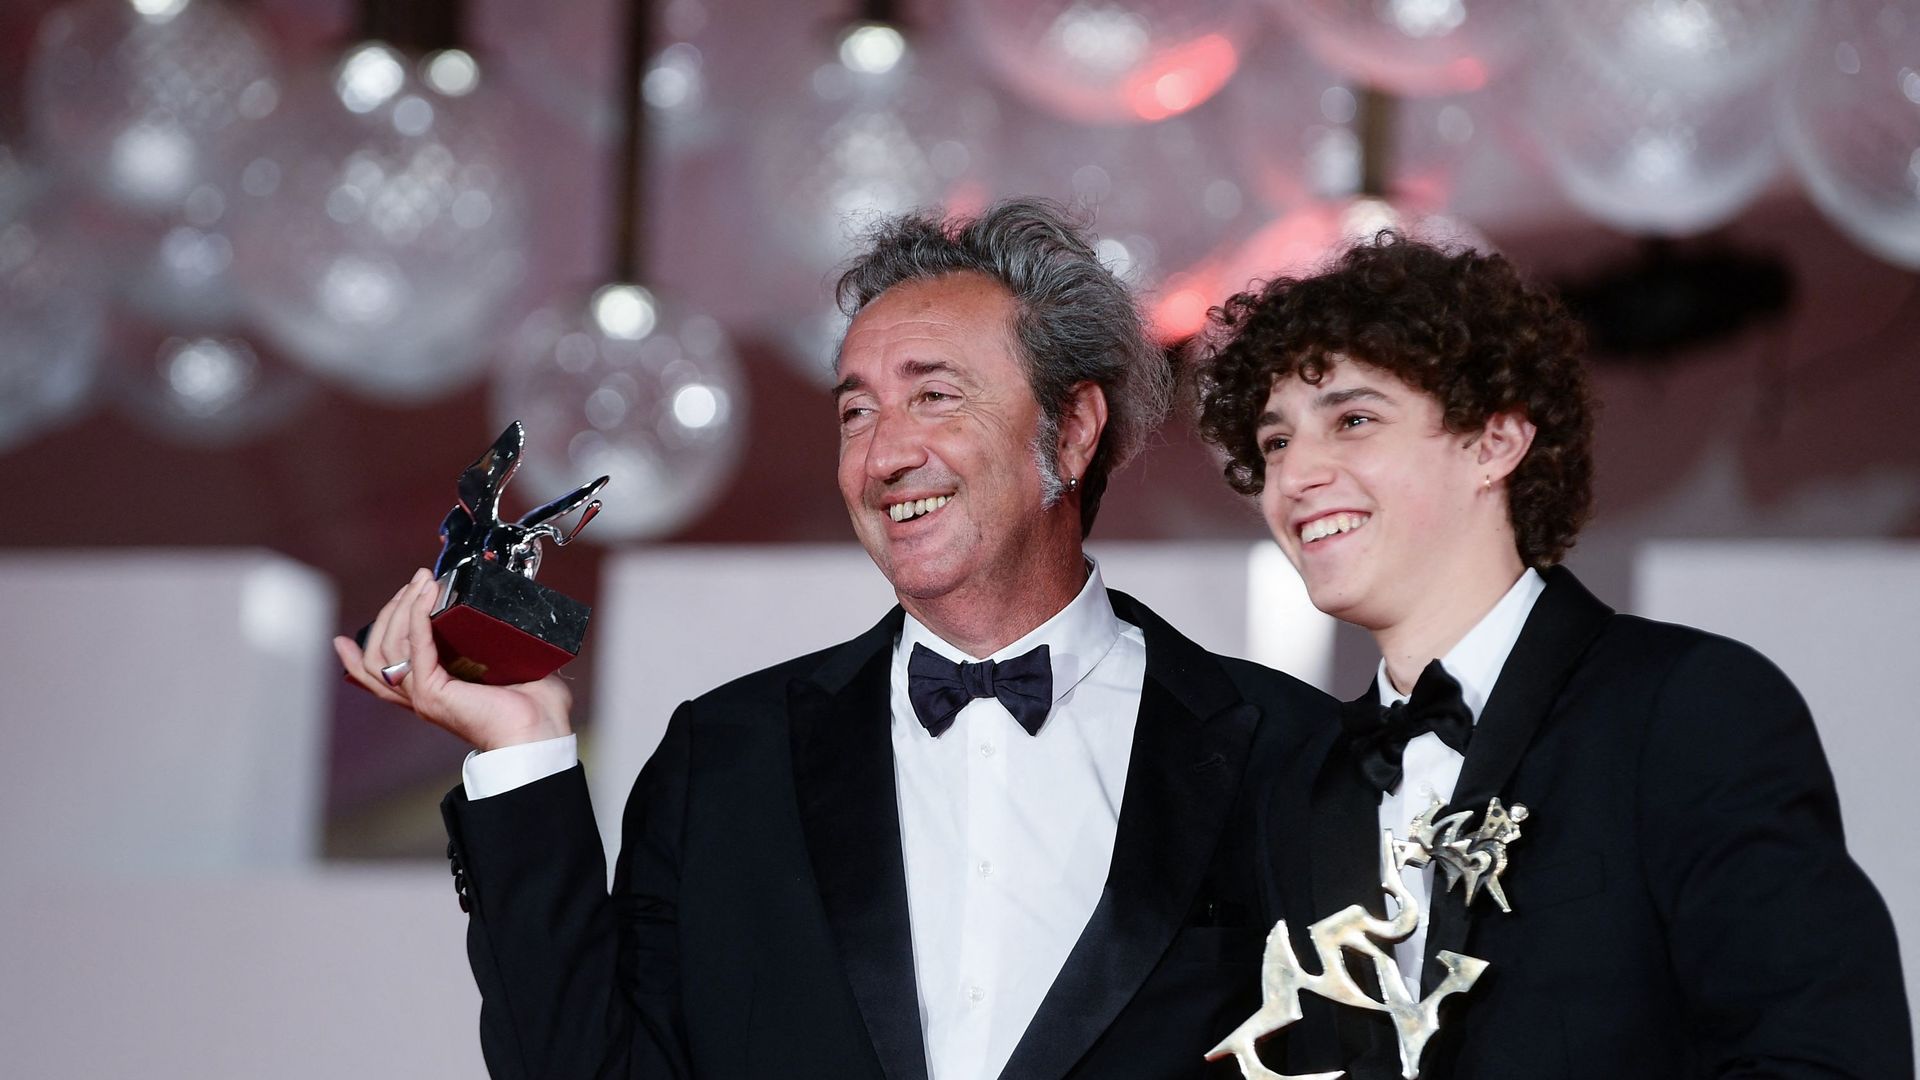 Le réalisateur italien Paolo Sorrentino pose avec le Lion d’argent – Grand prix du jury qu’il a reçu pour "E stato la mano di Dio" (La main de Dieu), ainsi que l’acteur italien Filippo Scotti tenant le prix "Marcello Mastroianni" lors de la cérémonie du 7